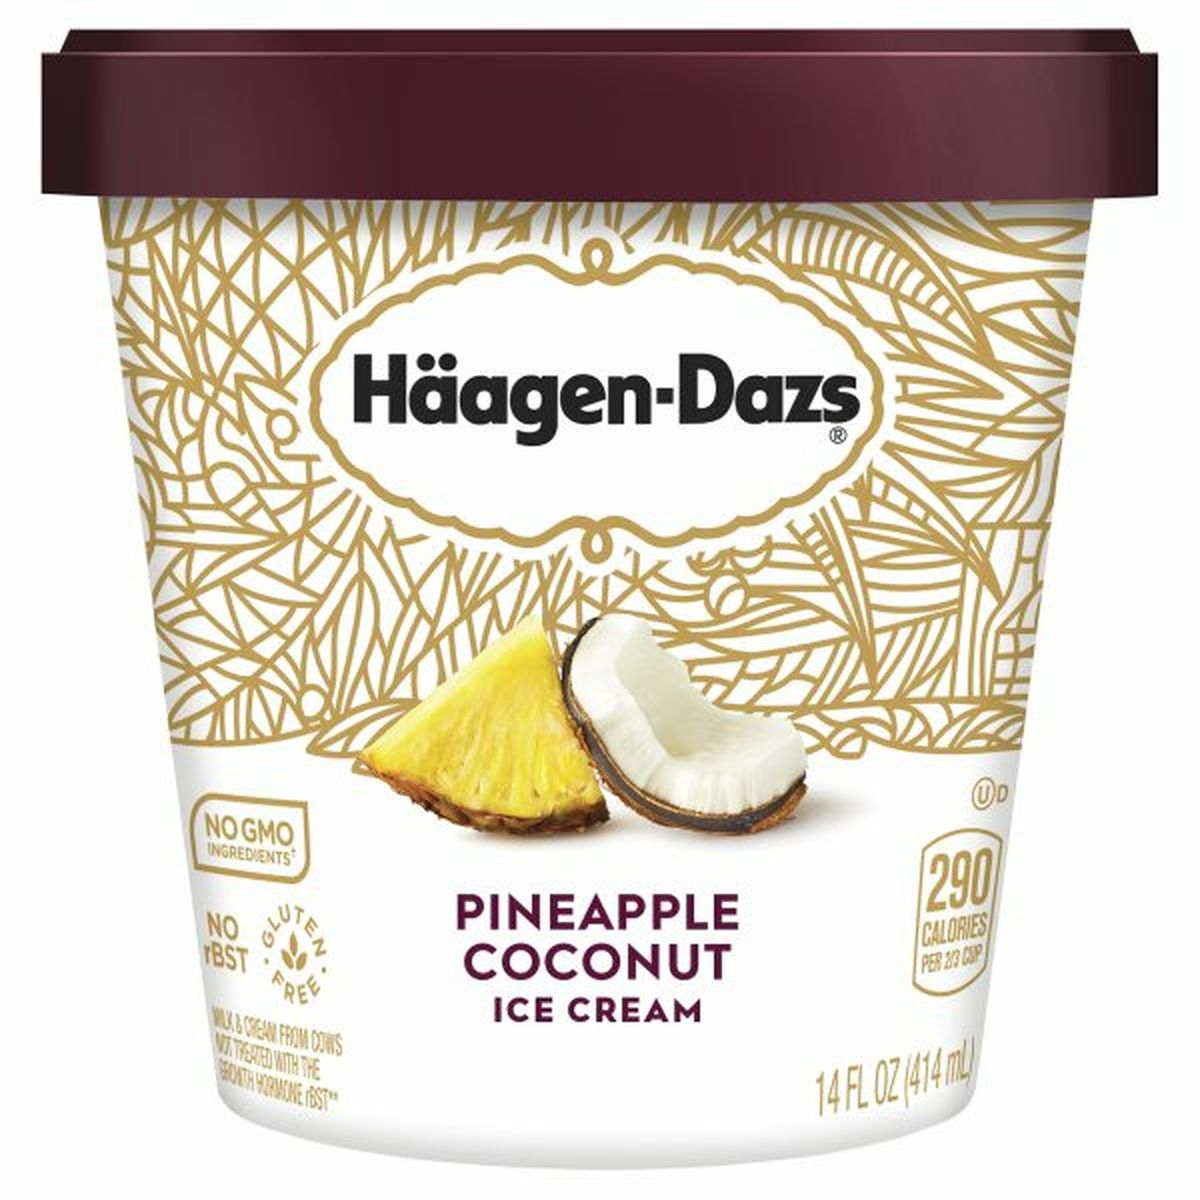 Calories in Haagen-Dazs Ice Cream, Pineapple Coconut